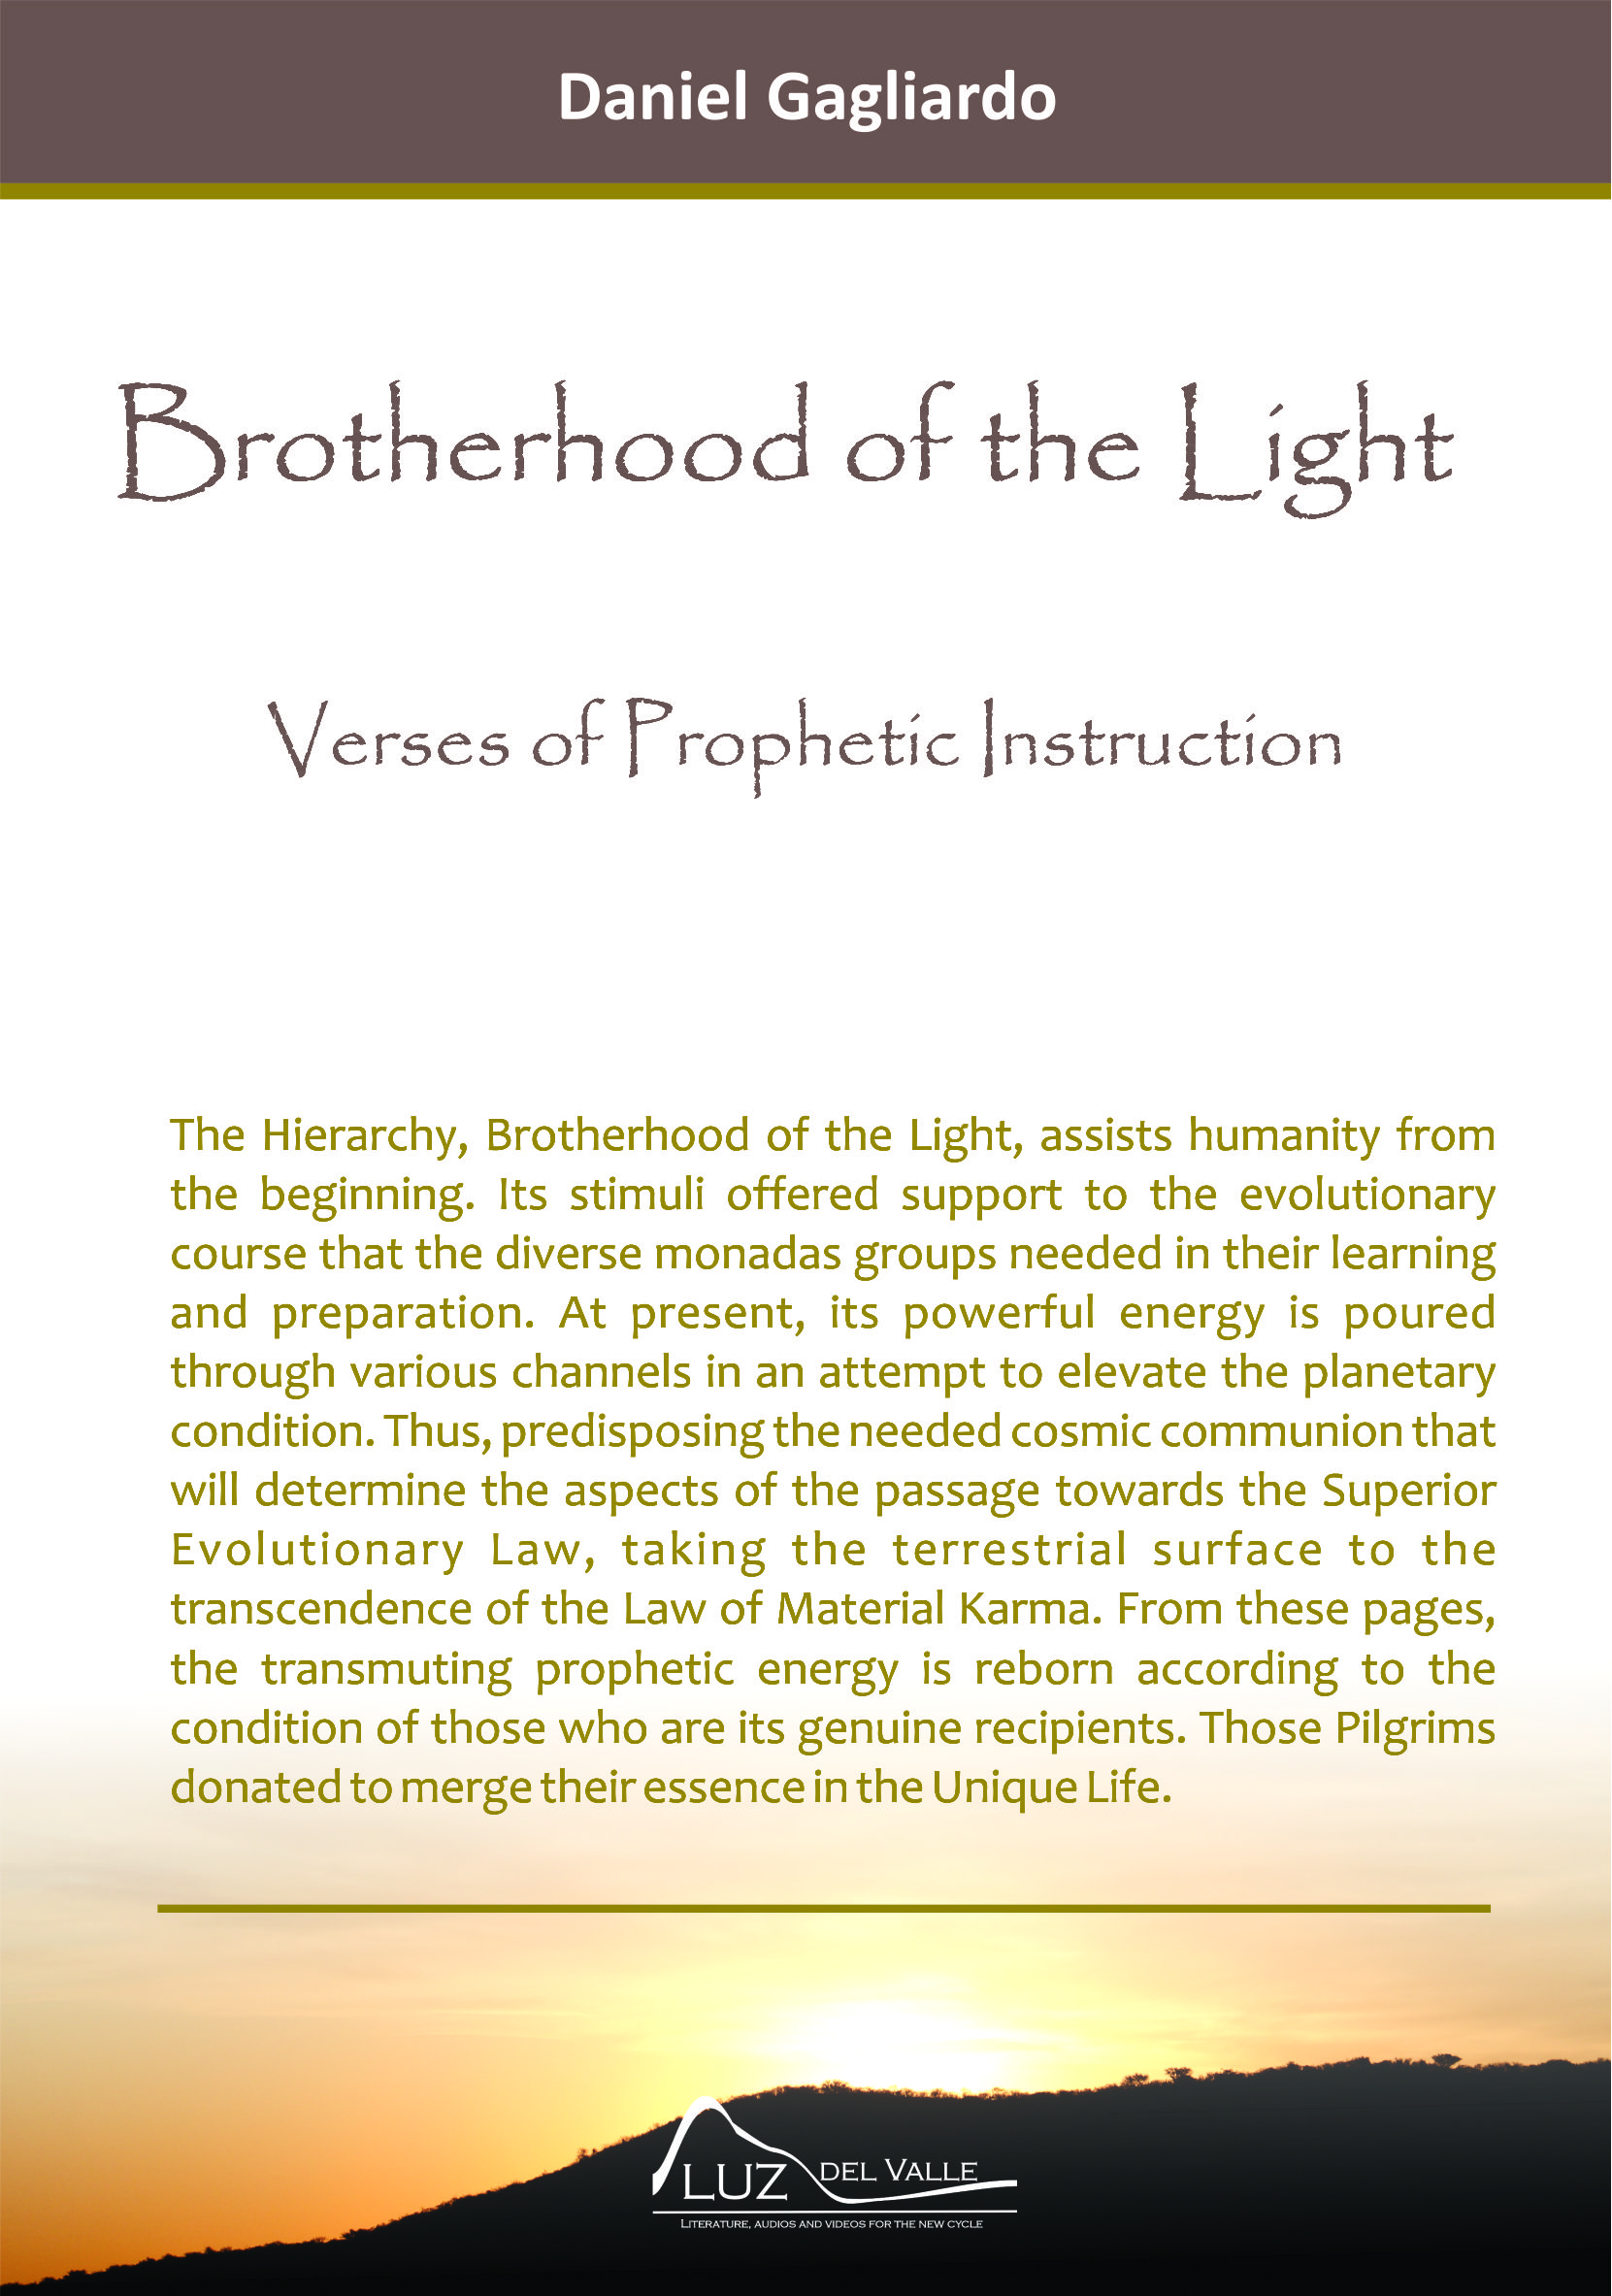 La Hermandad de la Luz